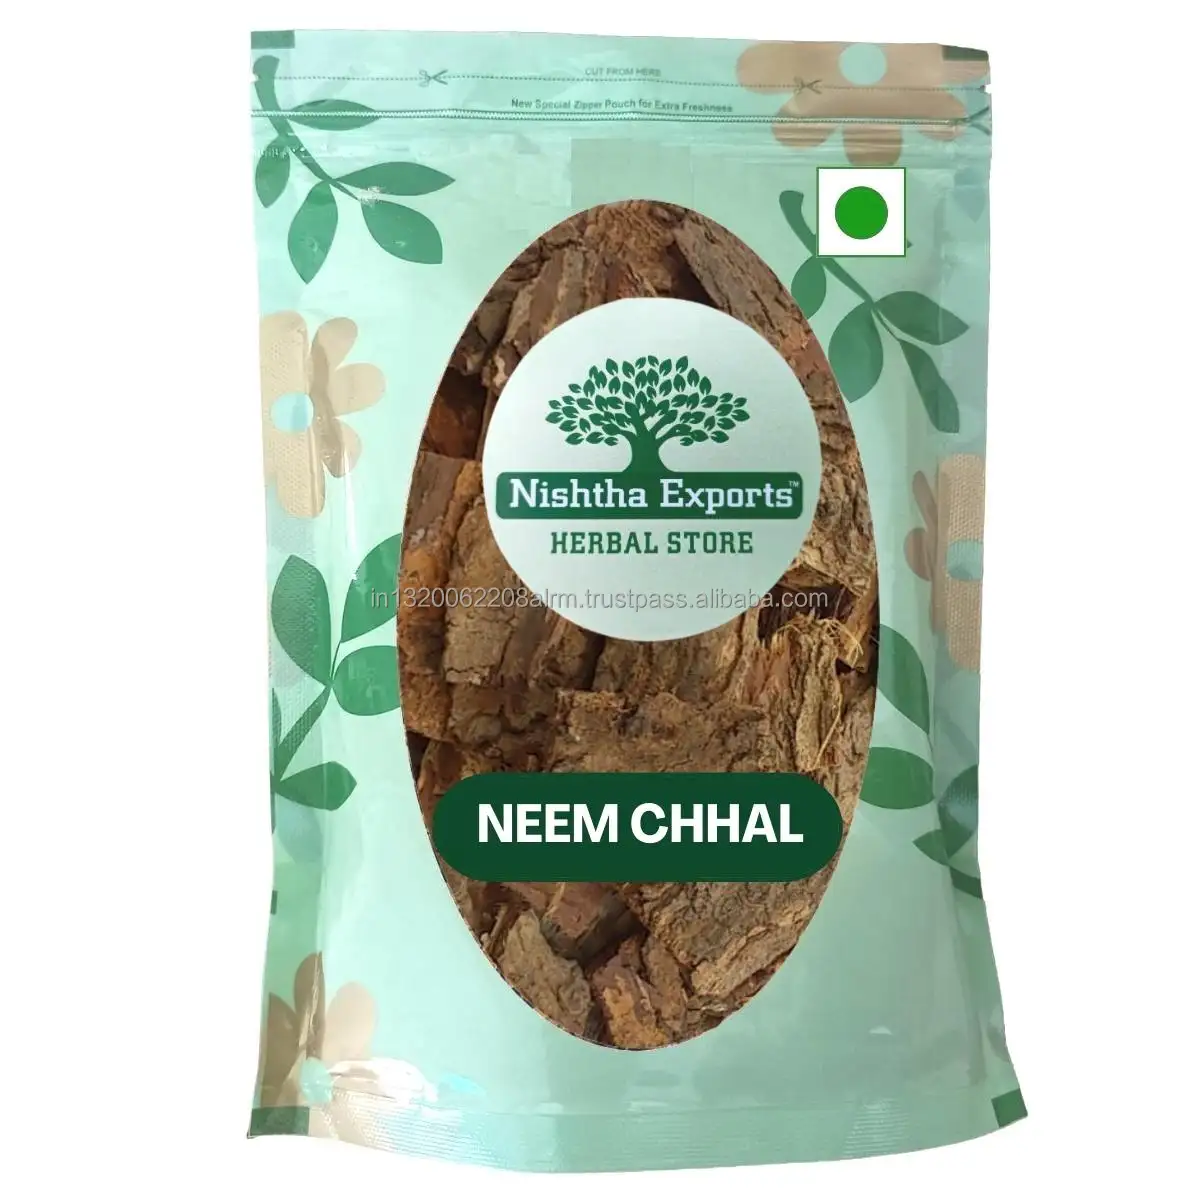 Neem chaal azadirachta indica Neem chhal vỏ cây thảo mộc khô tốt nhất desi jadi buti cho rối loạn Mắt Dạ dày khó chịu da